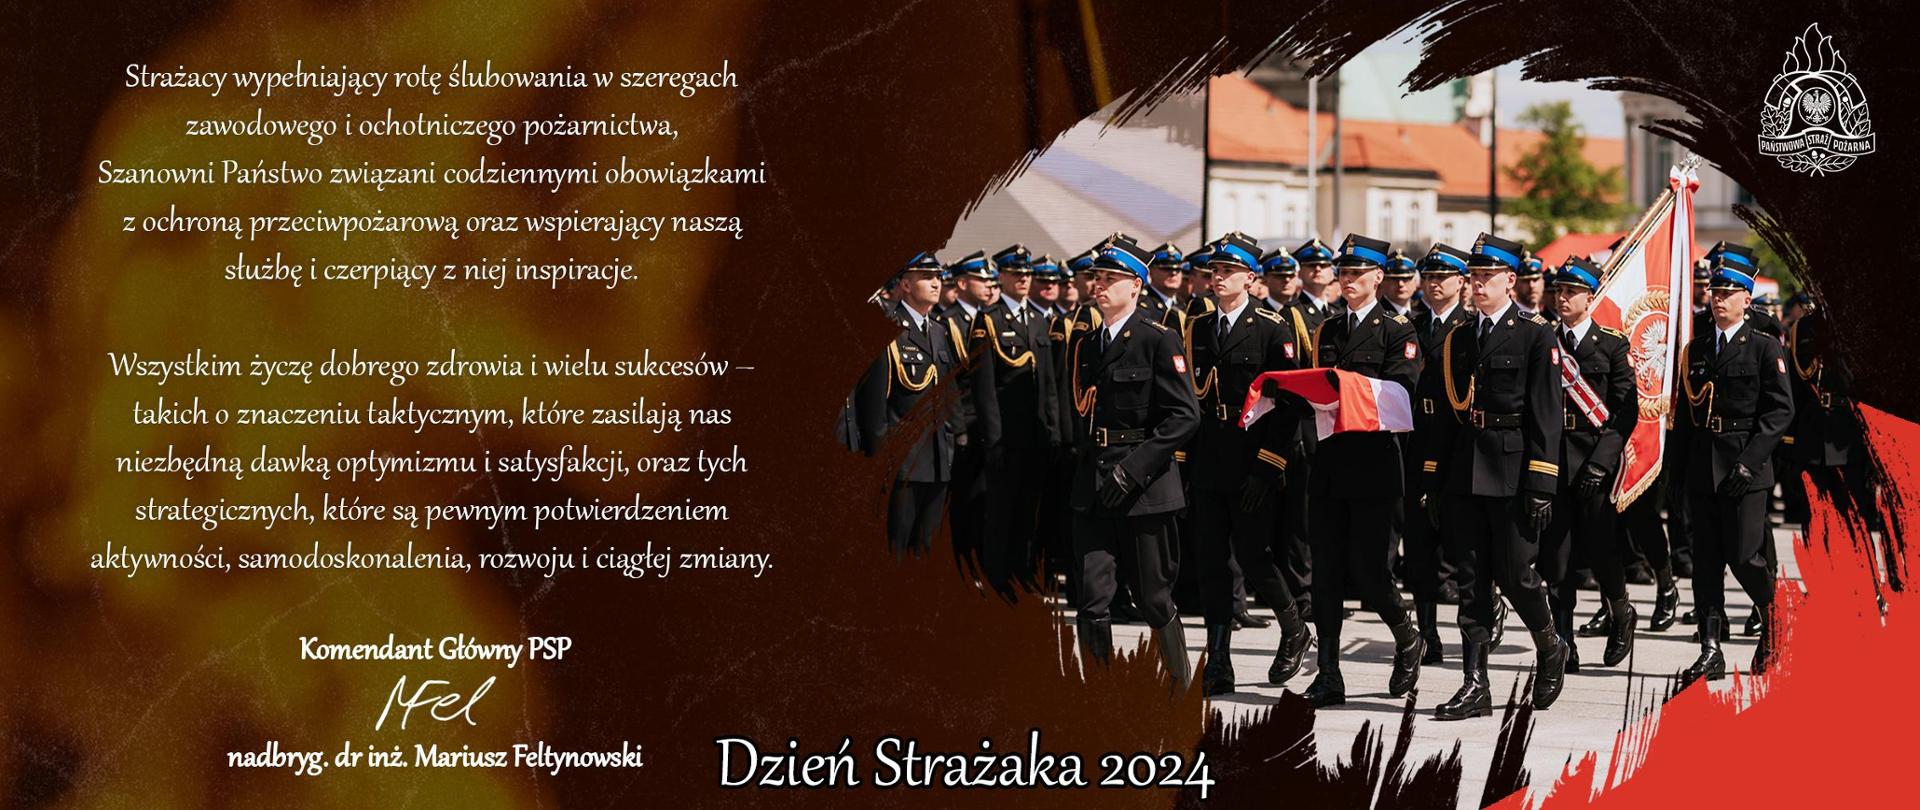 Życzenia KG PSP z okazji Dnia Strażaka 2024